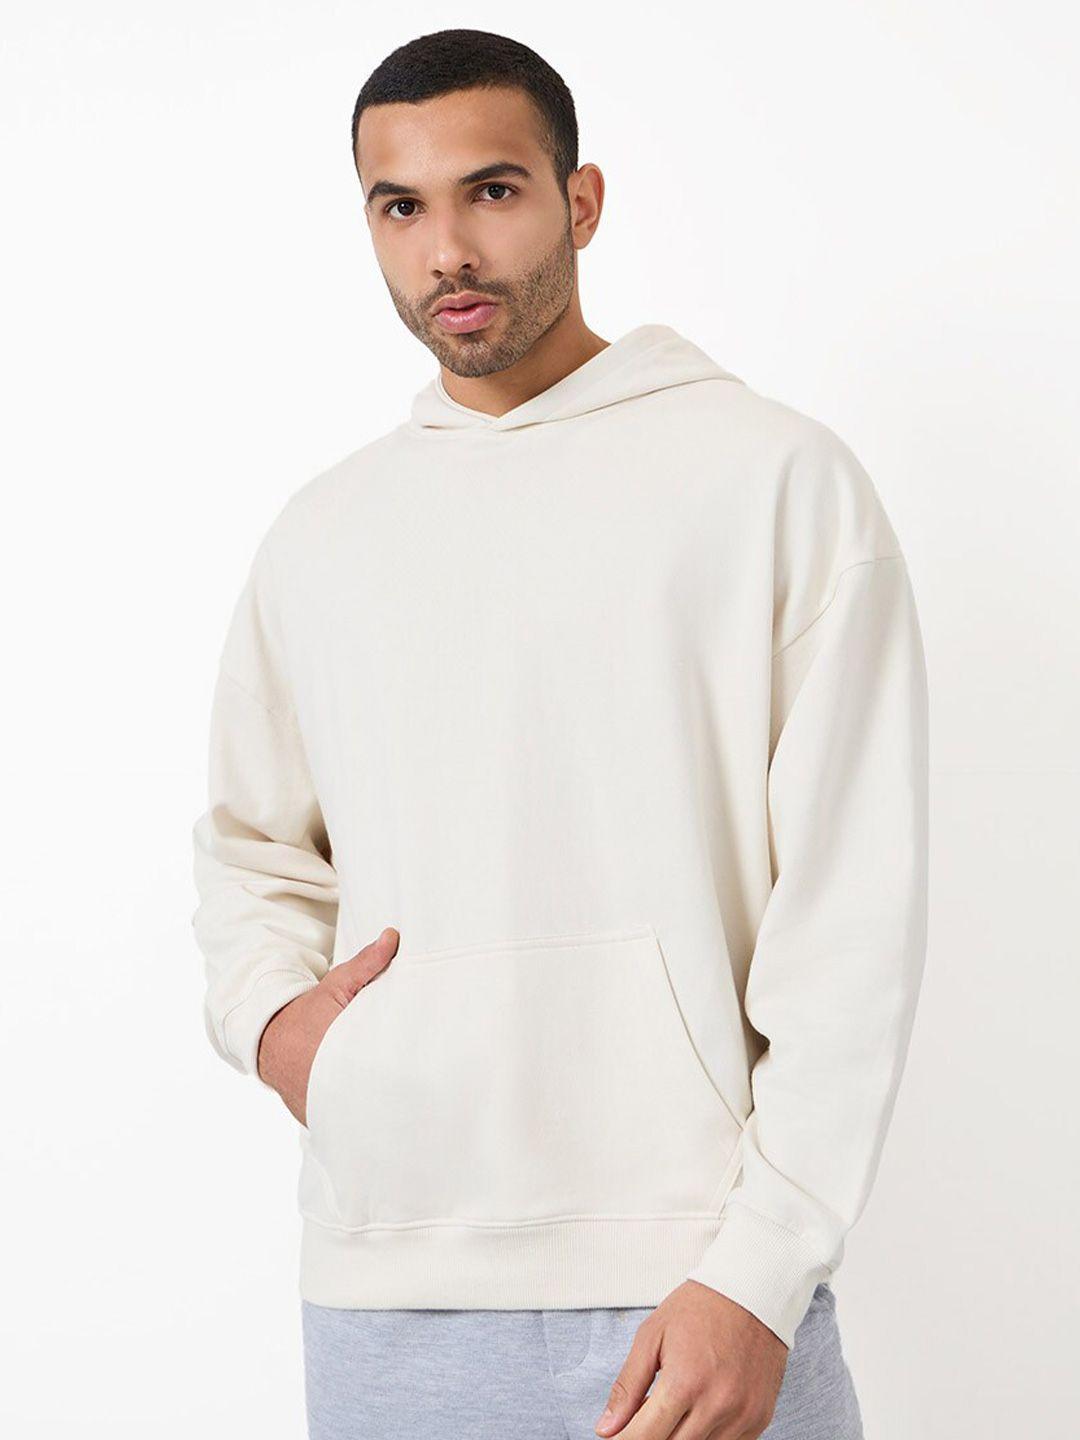 styli hooded long sleeves pullover sweatshirt